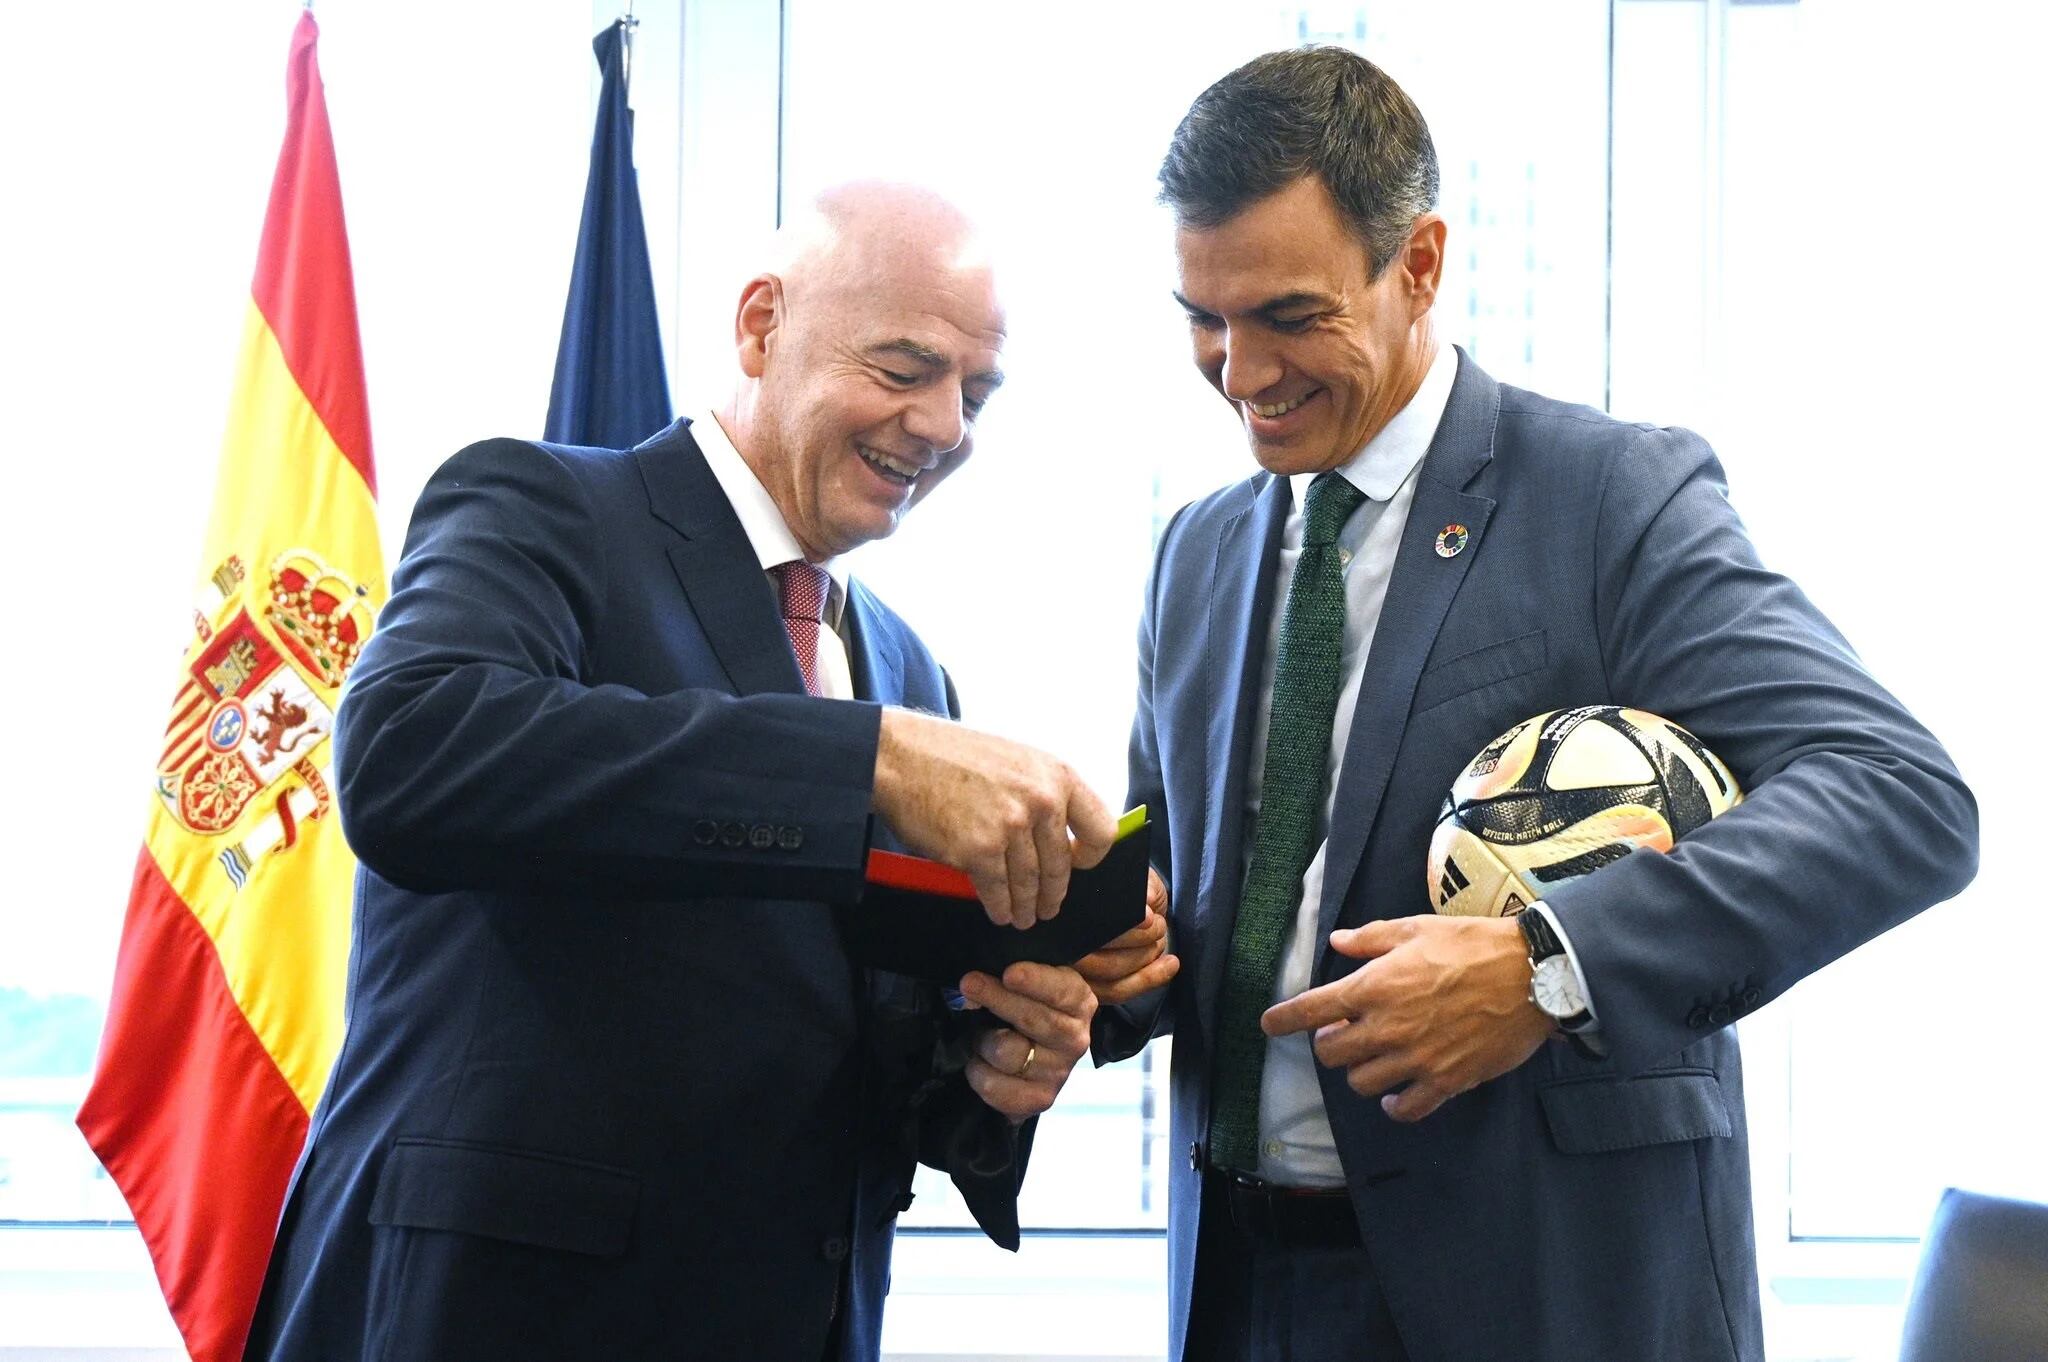 España será sede del Mundial de Fútbol 2030 que se disputará en seis países y tres continentes diferentes